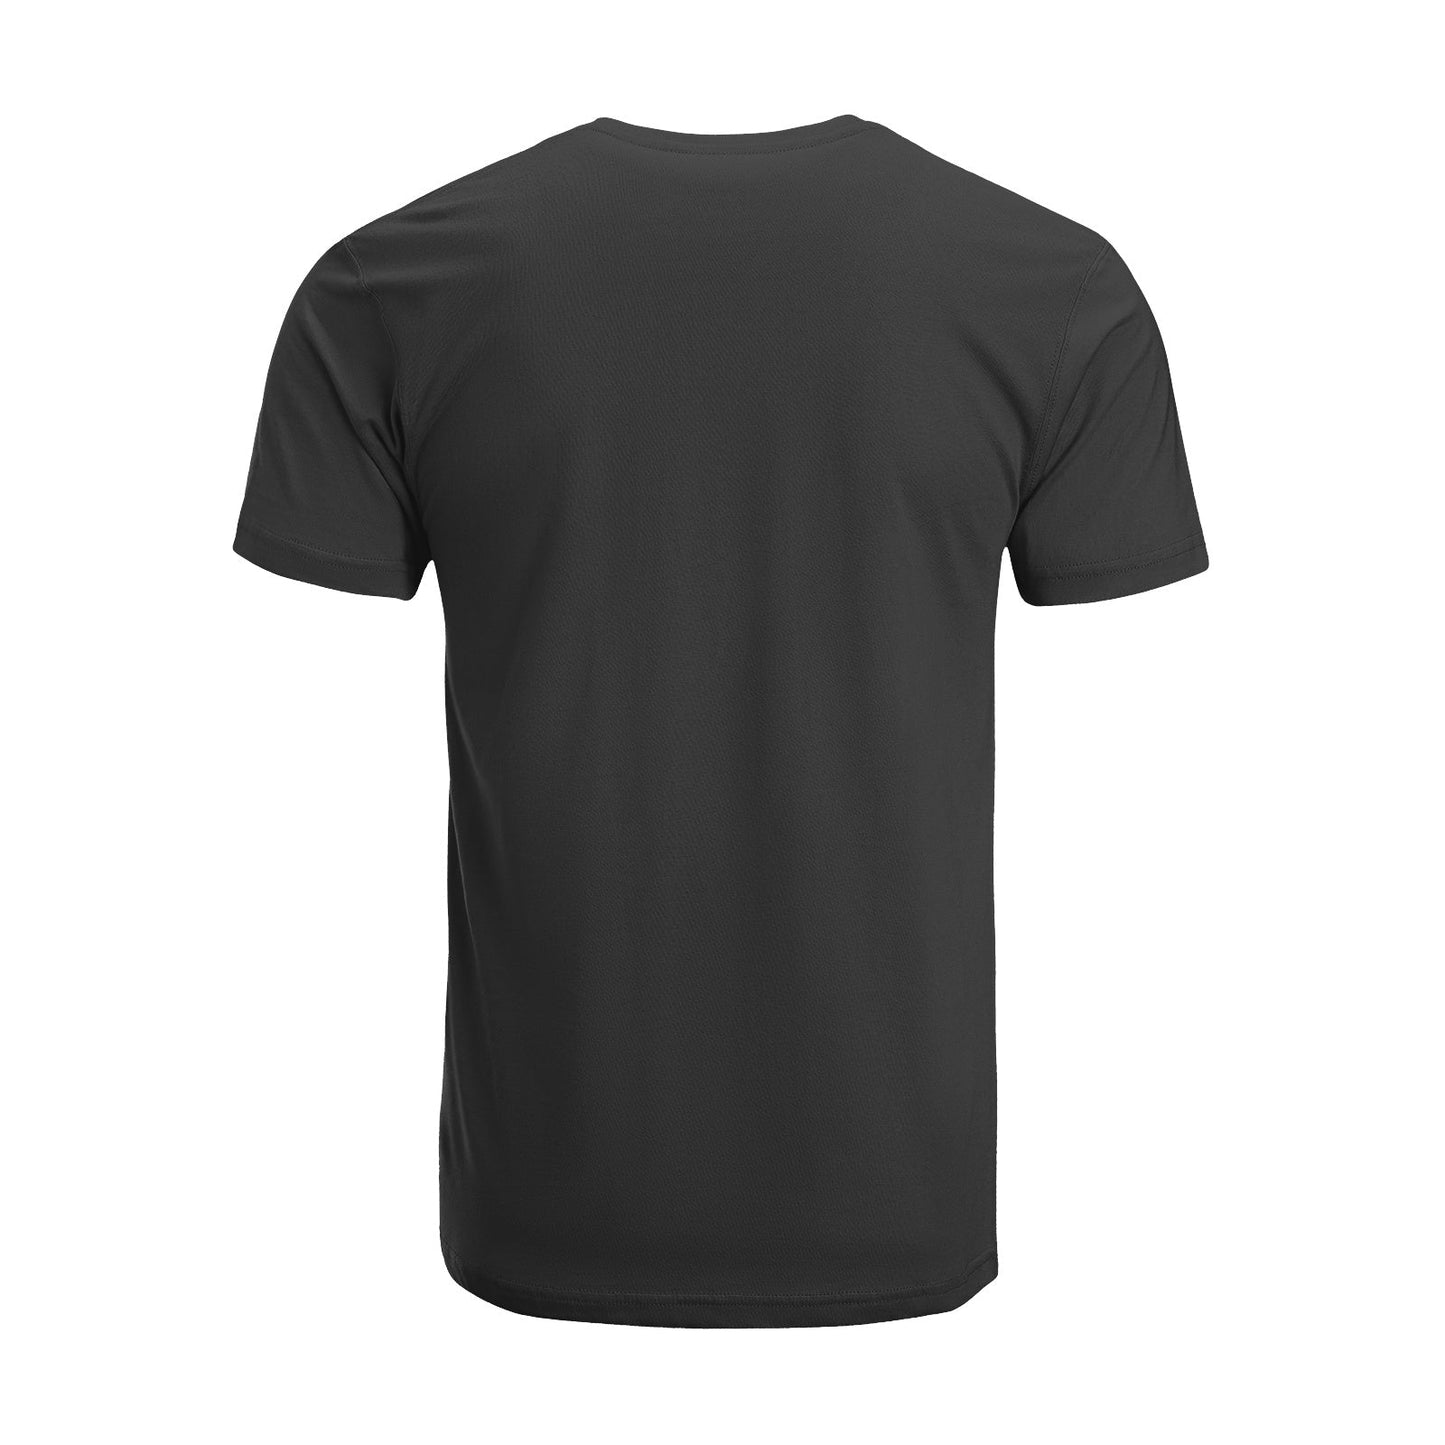 Unisex Short Sleeve Crew Neck Cotton Jersey T-Shirt TRUCK 11